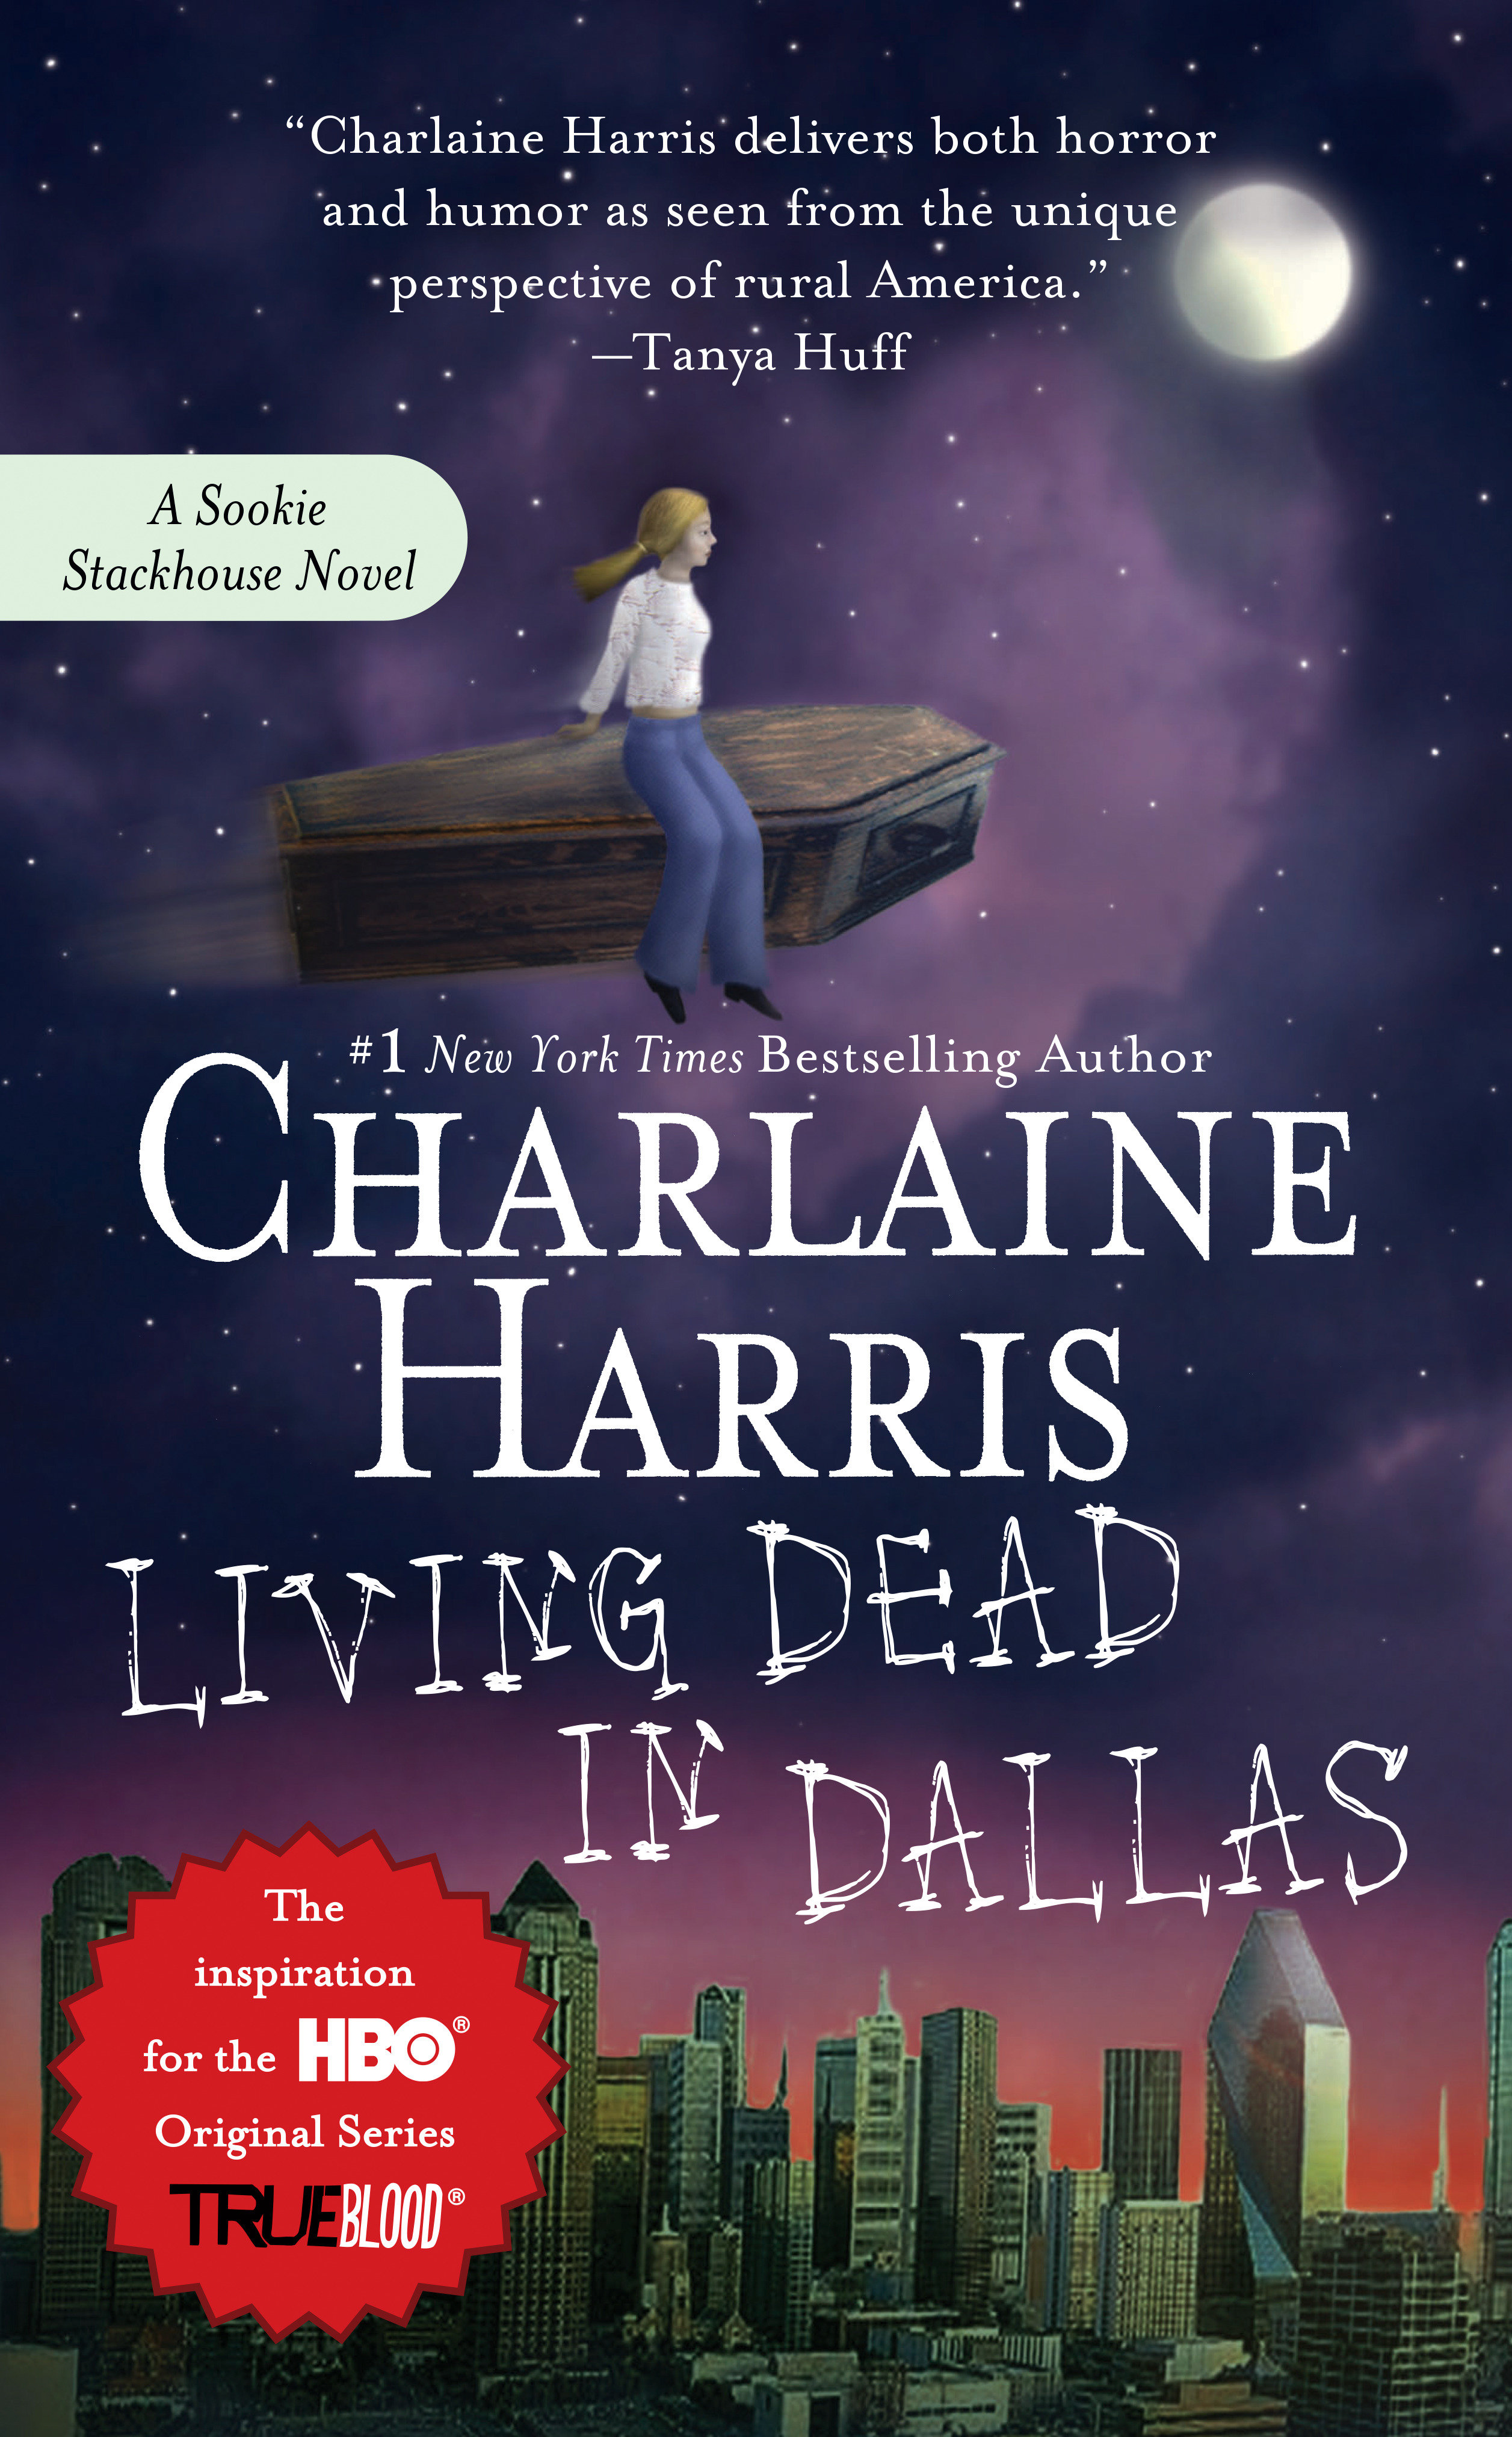 Living dead in Dallas cover image